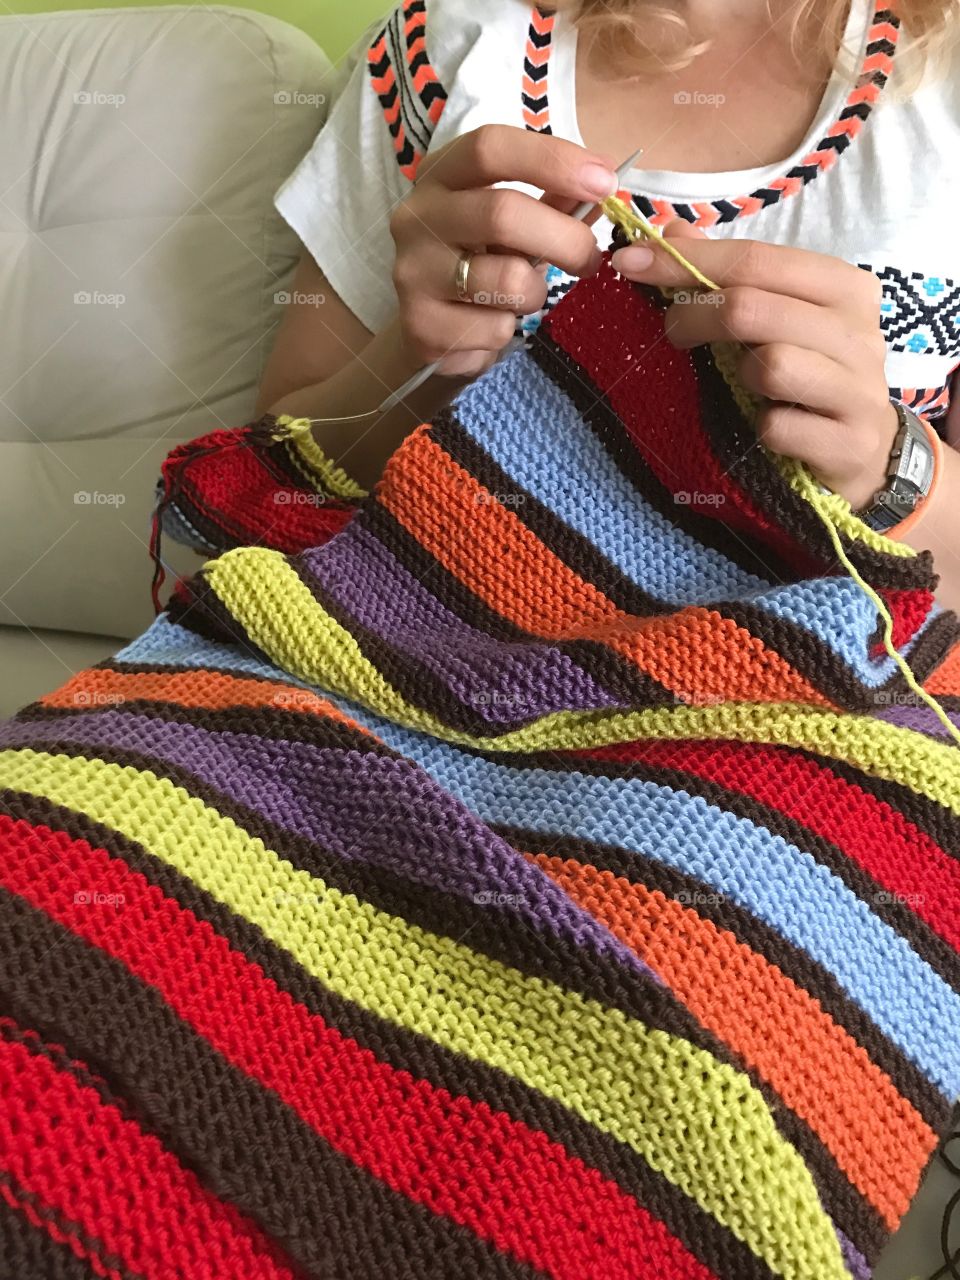 Knitting a stripy blanket